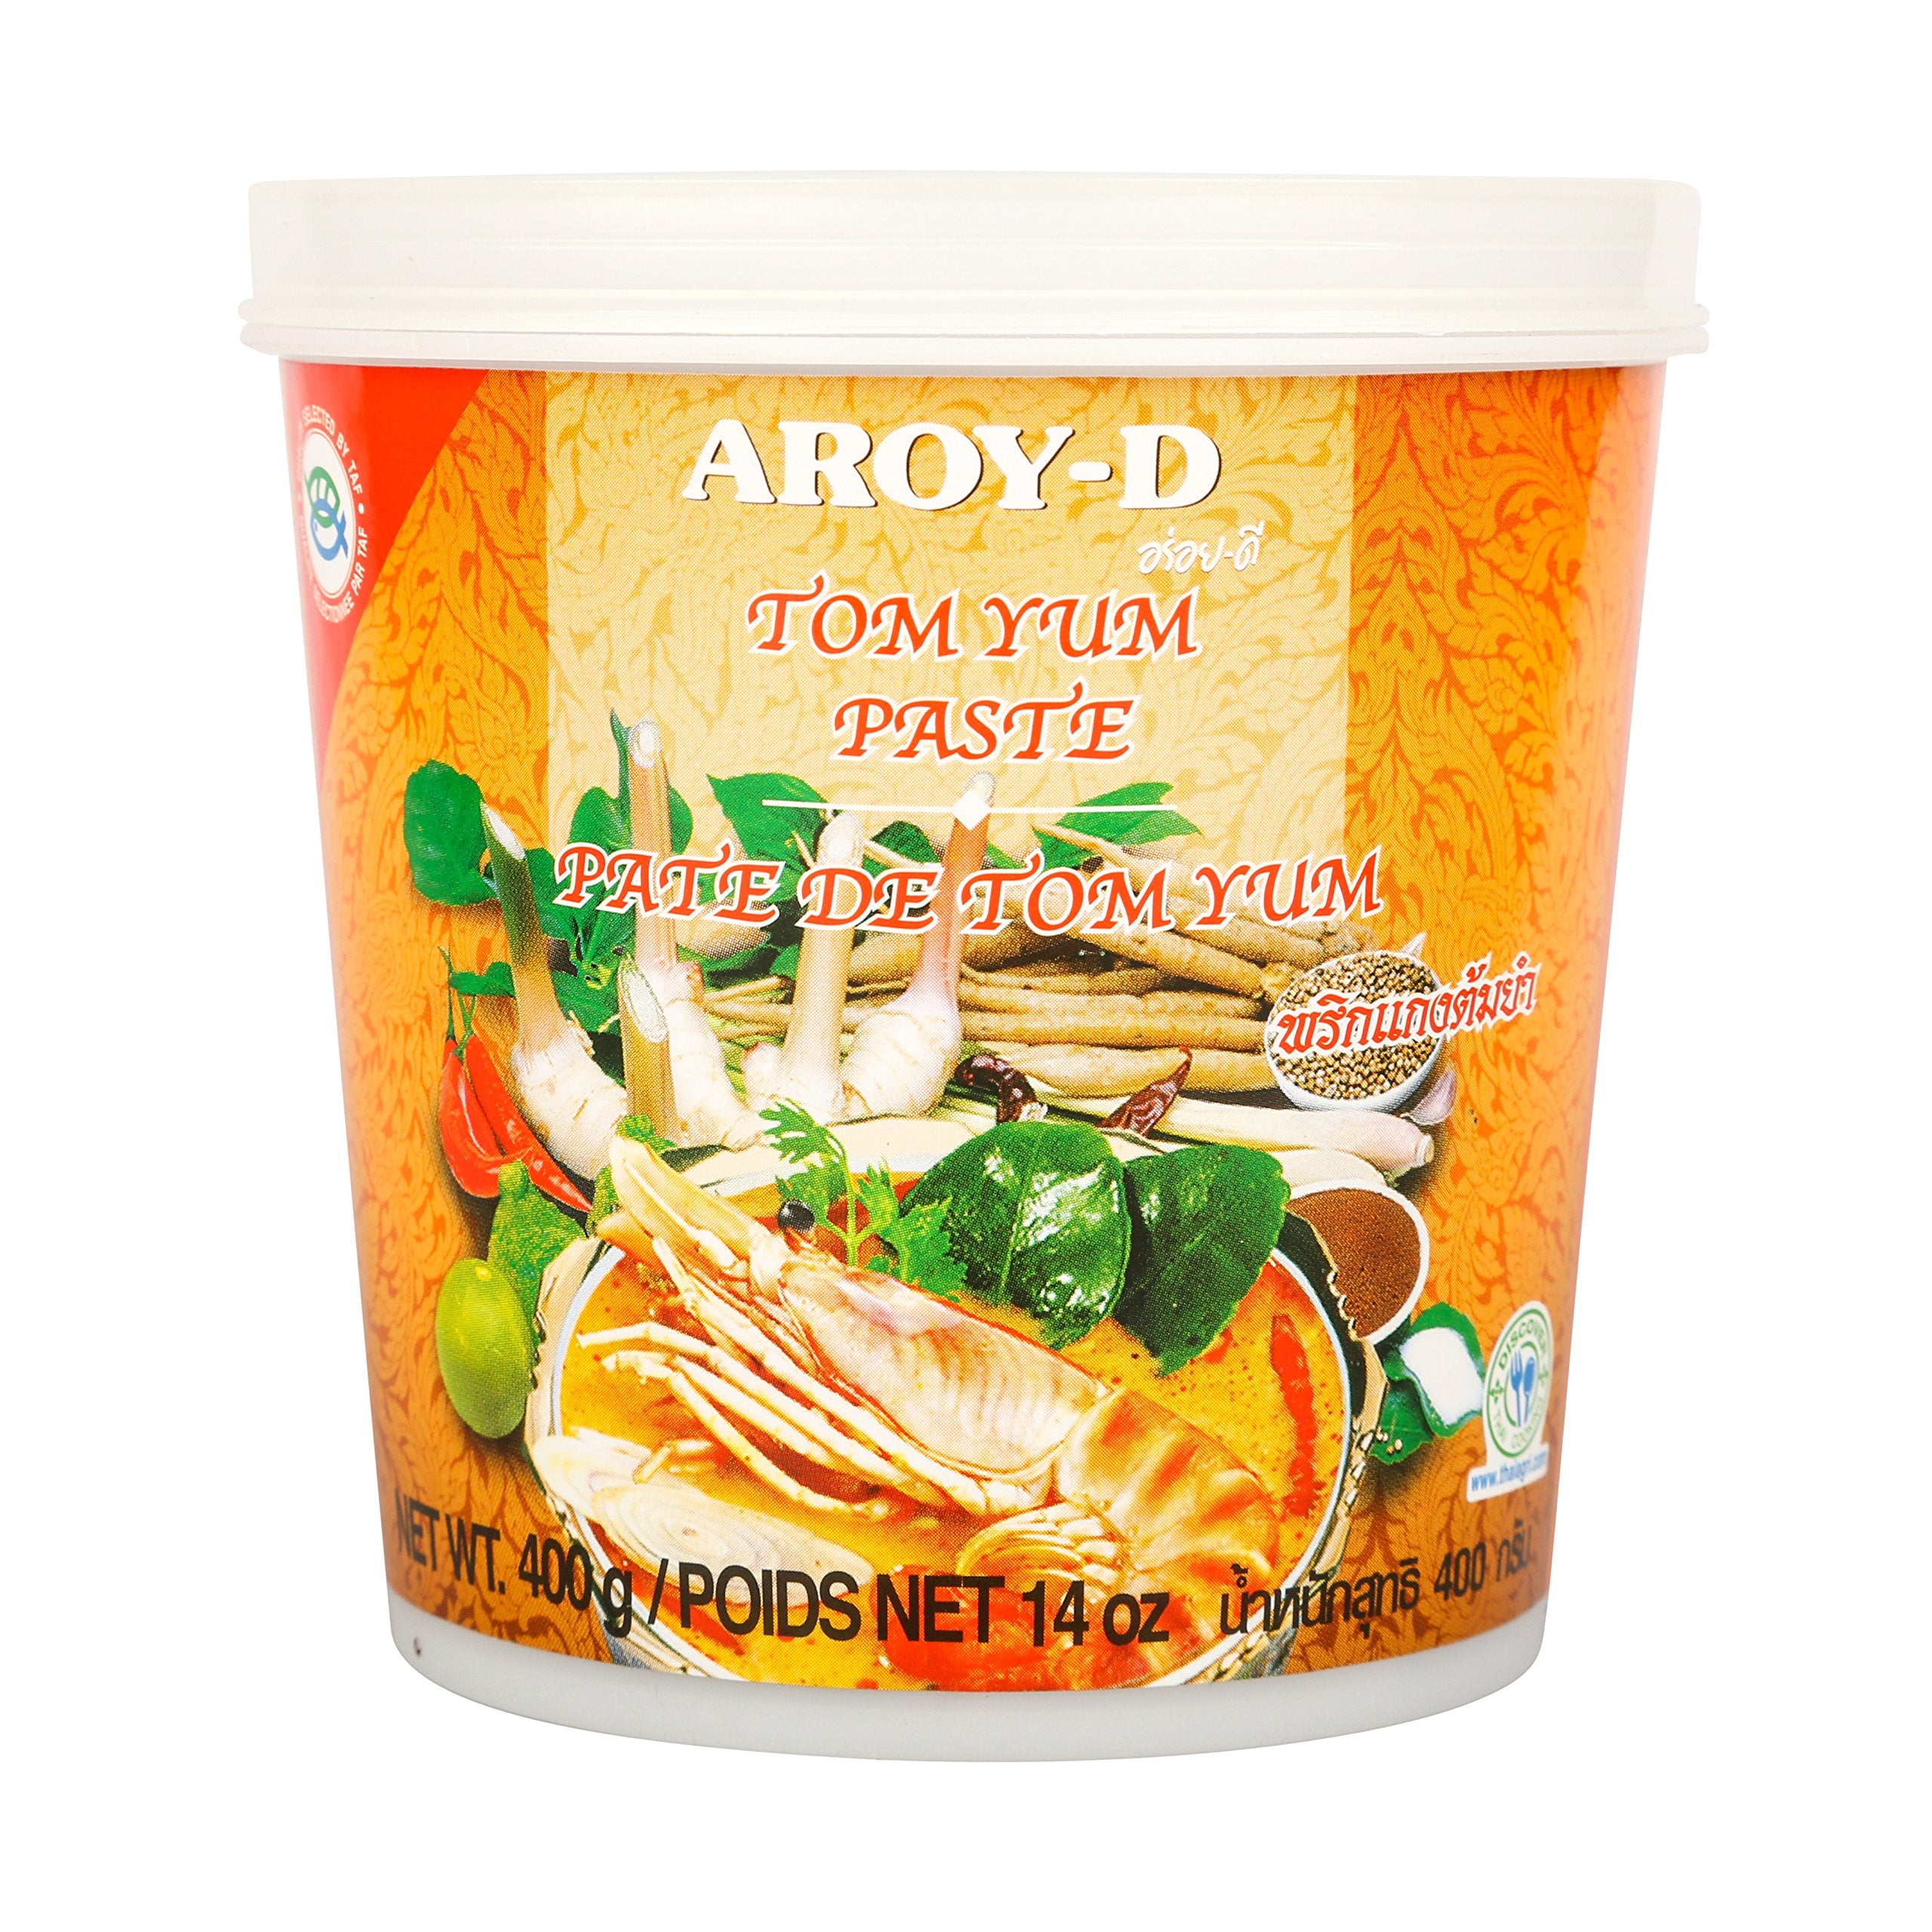 Thai Tom Yum Paste 400g Tub by Aroy-D